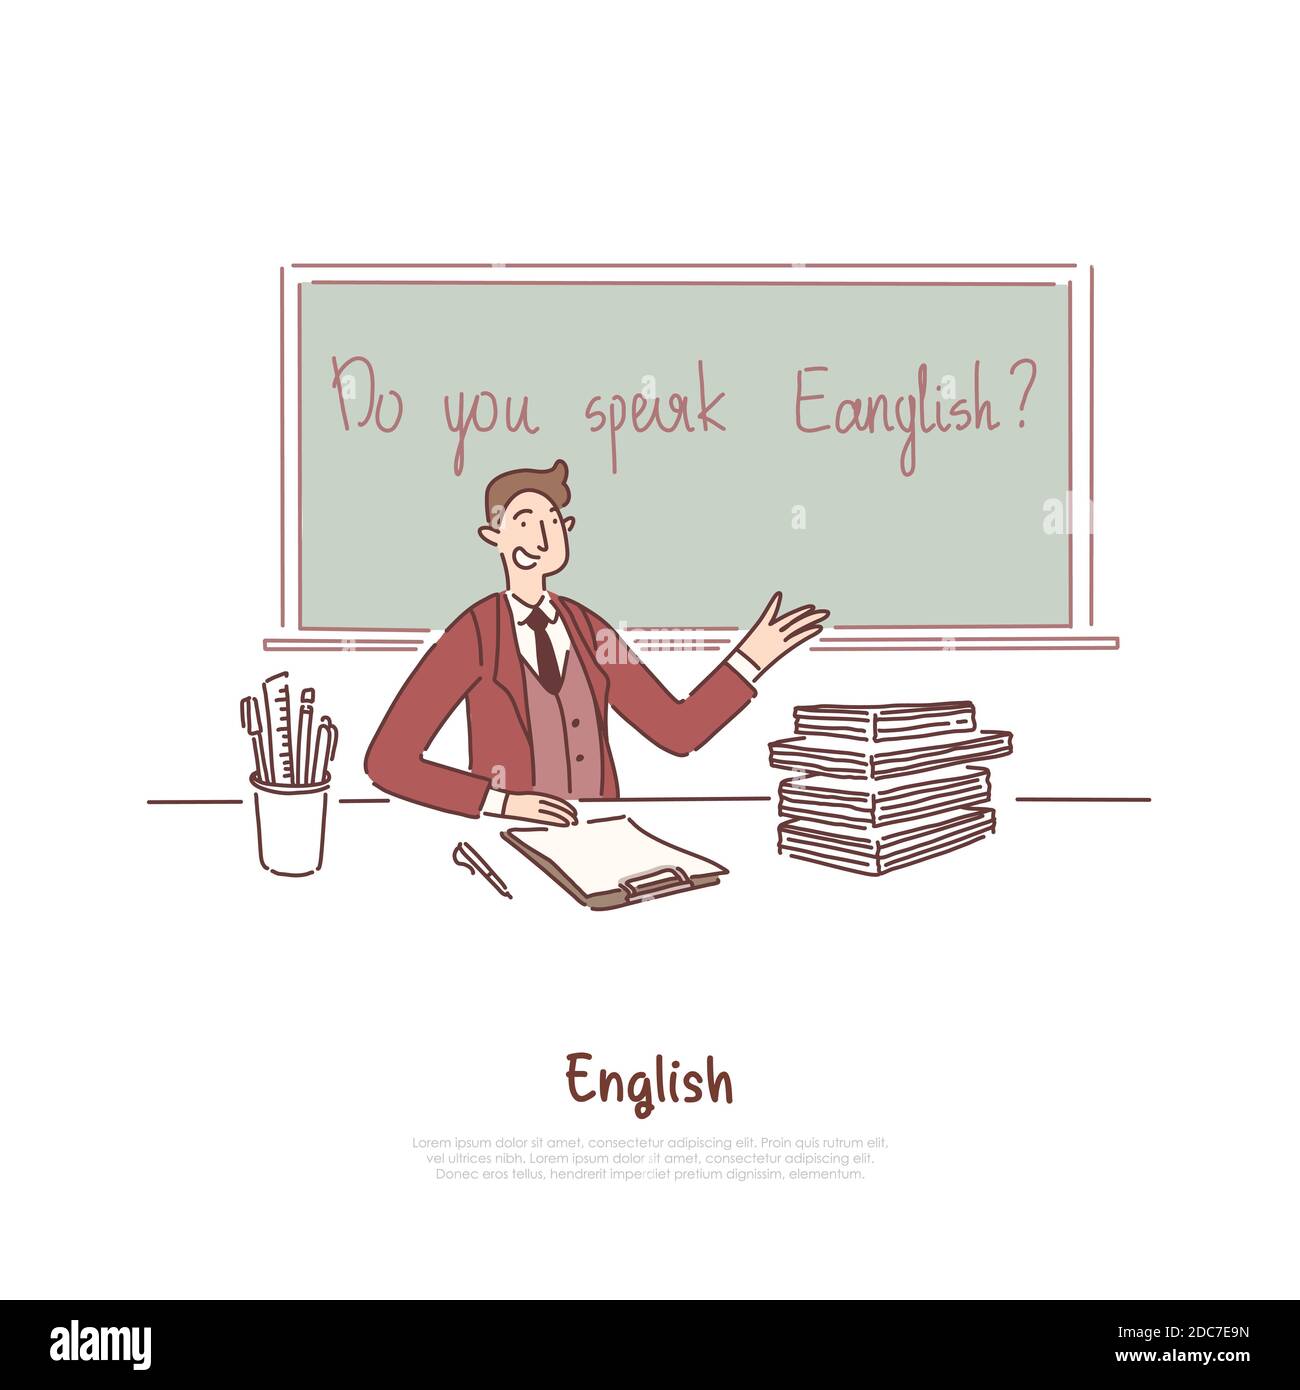 english teacher interview questions